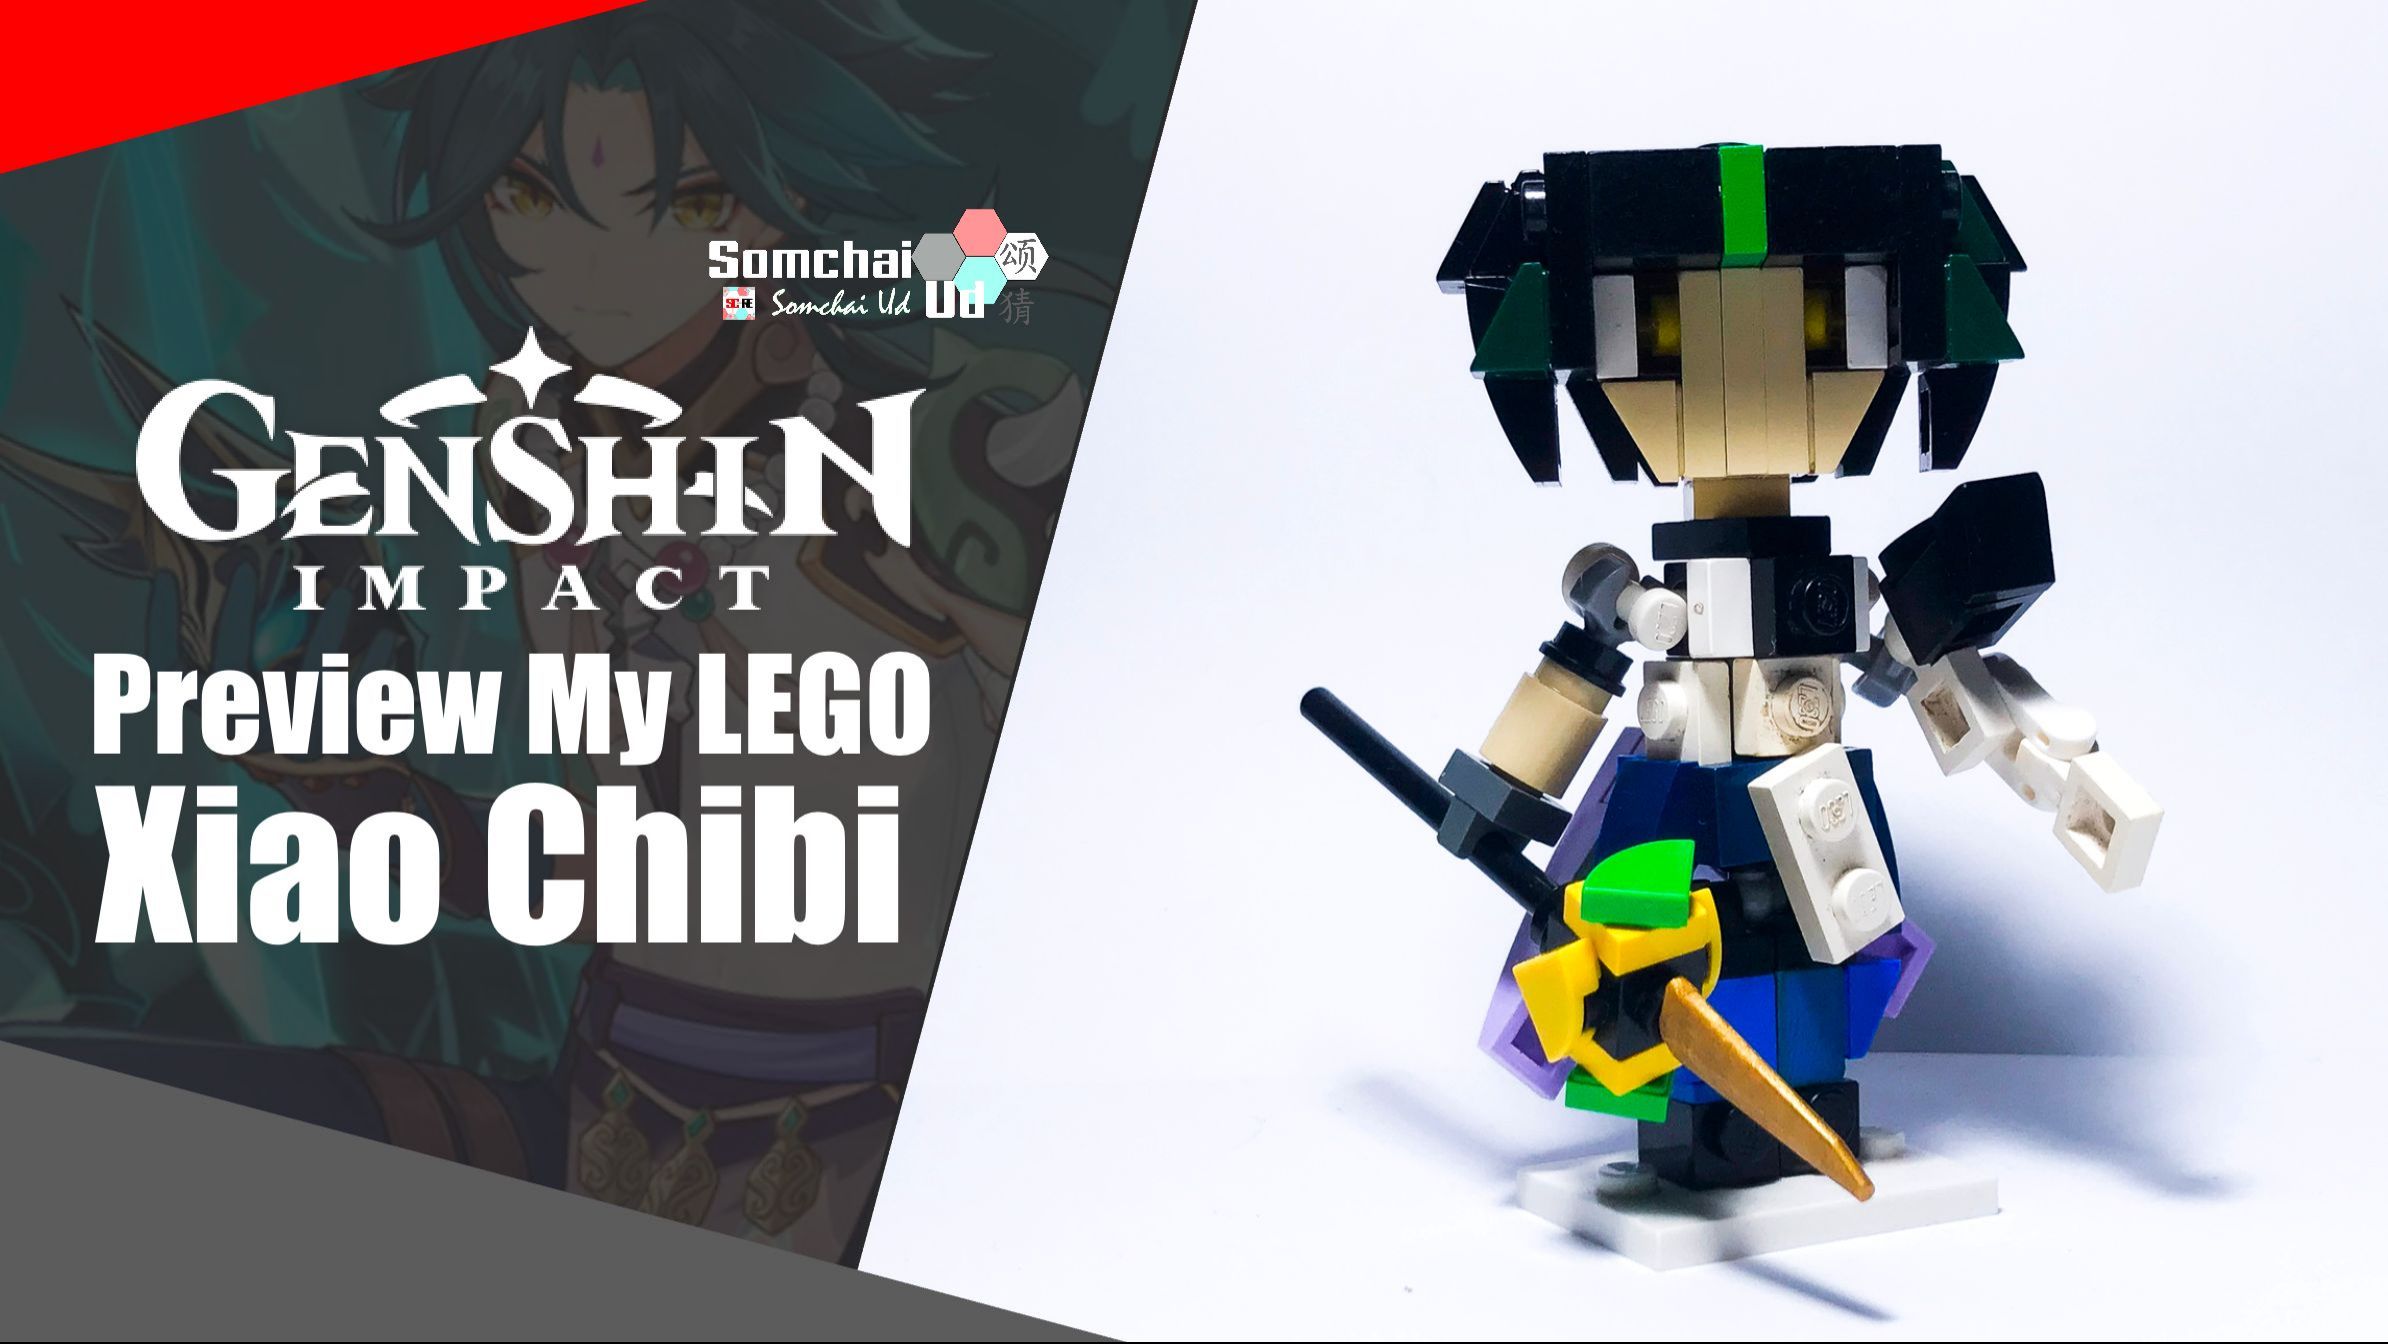 Genshin Impact xiao chibi: Tận hưởng một trải nghiệm đáng nhớ với nhân vật yêu thích của bạn từ trò chơi Genshin Impact với hình dáng chibi đáng yêu của Xiao. Hãy khám phá thế giới đầy phép thuật và kỳ quặc, và tìm hiểu thêm về toàn bộ câu chuyện của trò chơi này. Xem ngay để cảm nhận sự kiện tuyệt vời này!